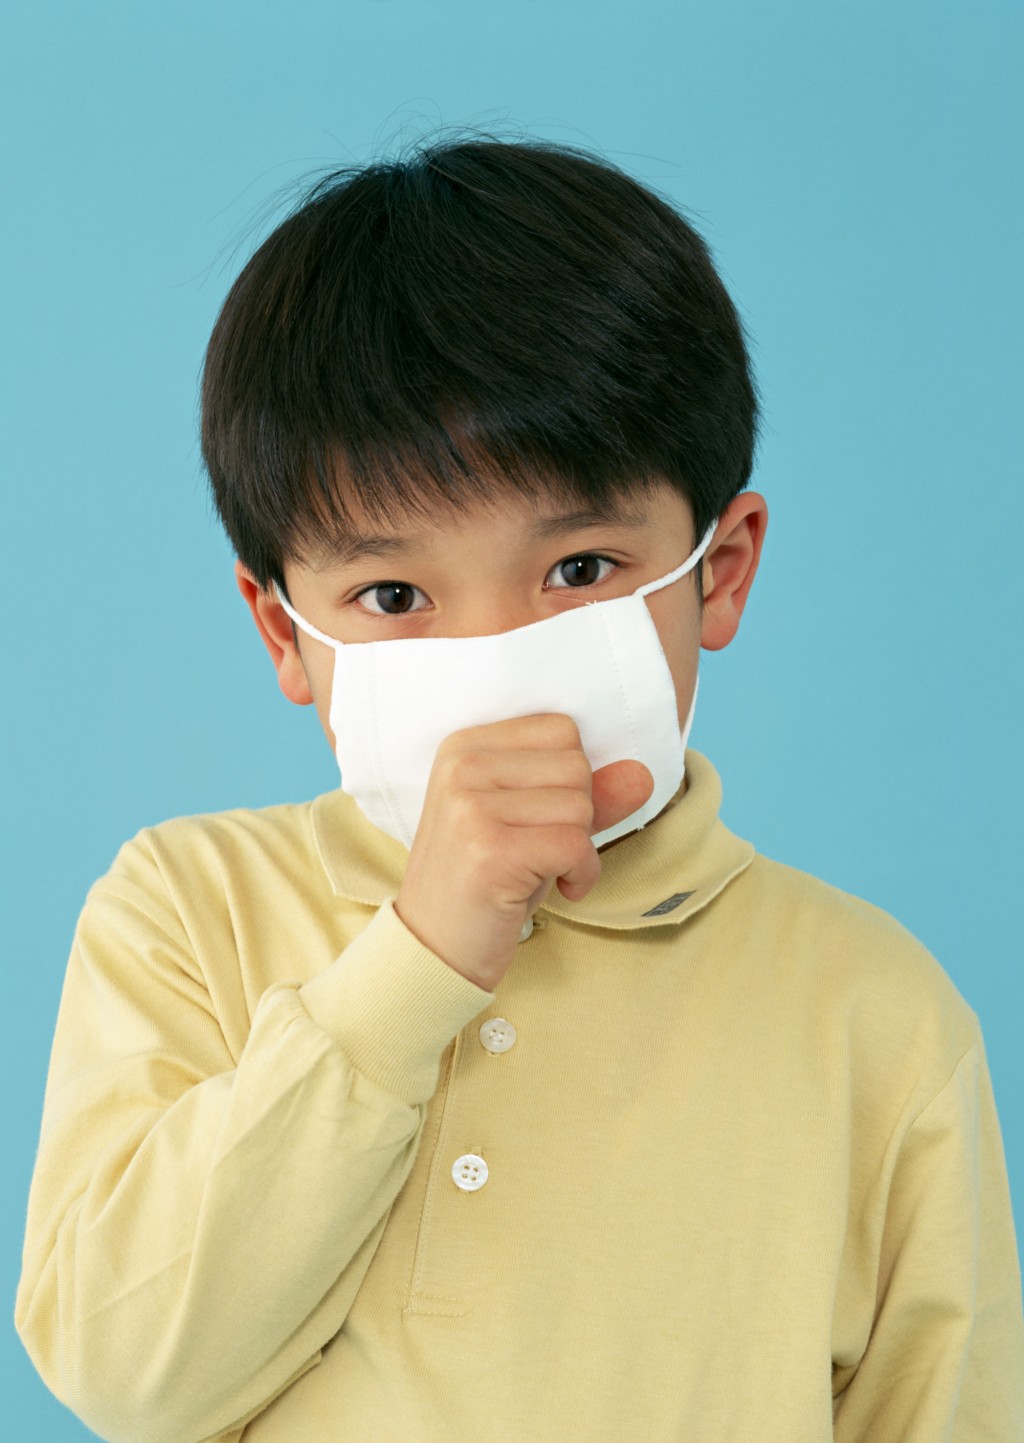 傷風感冒兒童不可服食阿士匹靈。